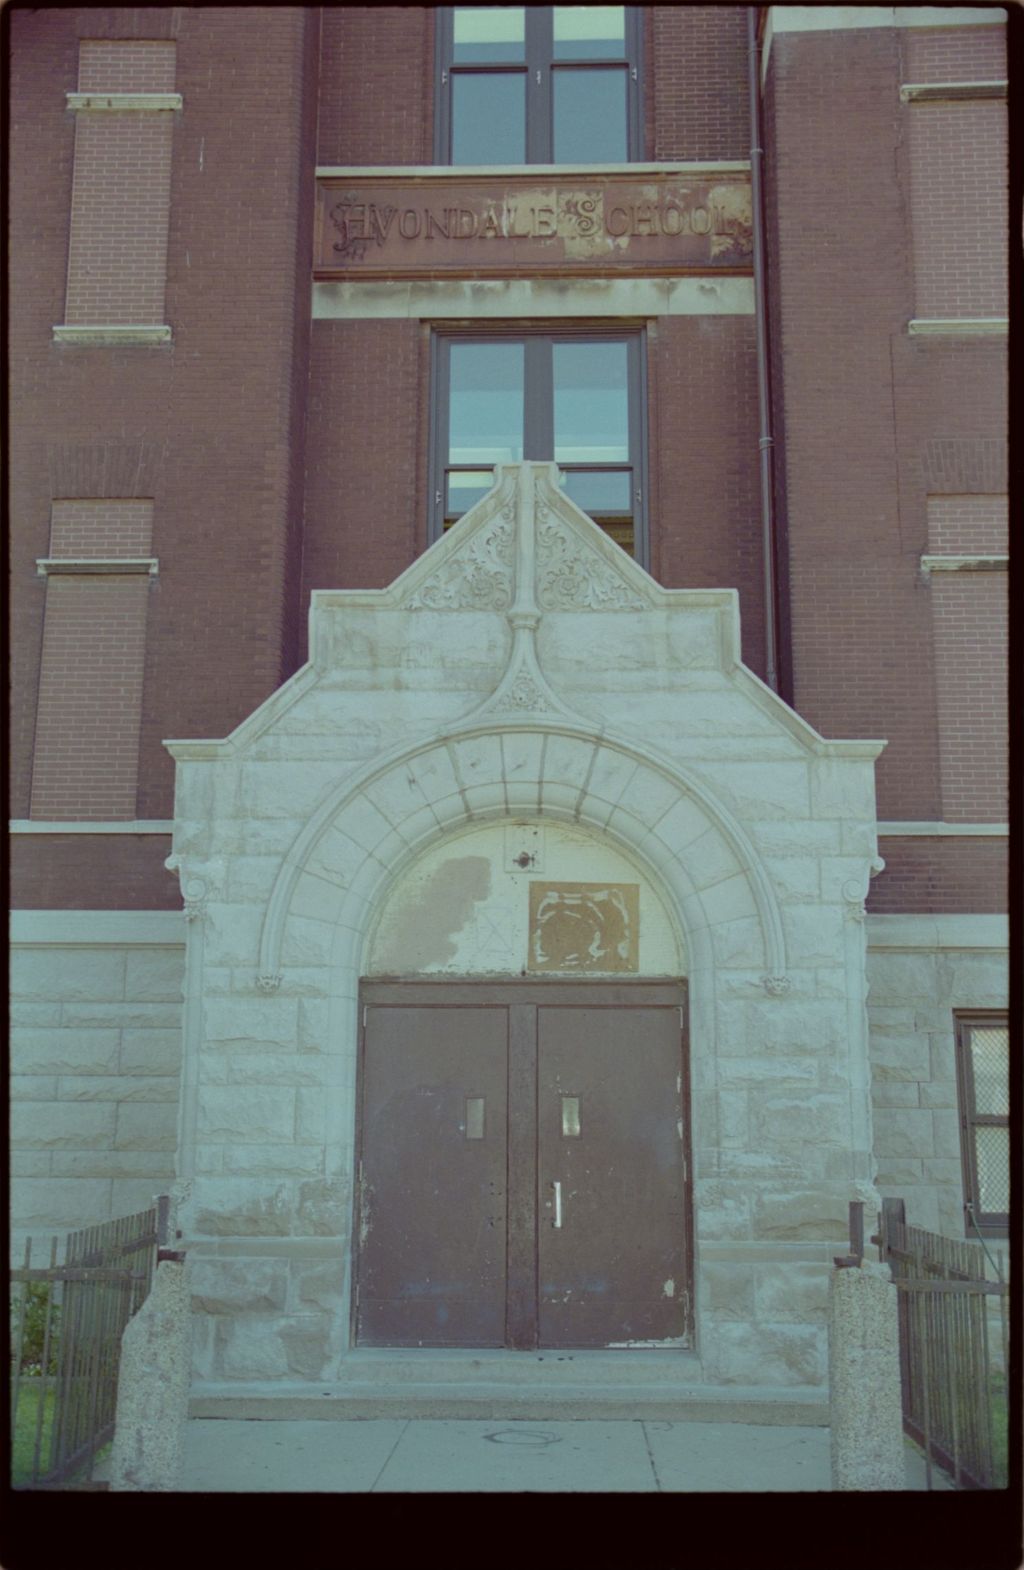 Avondale Elementary School (Folder 632)